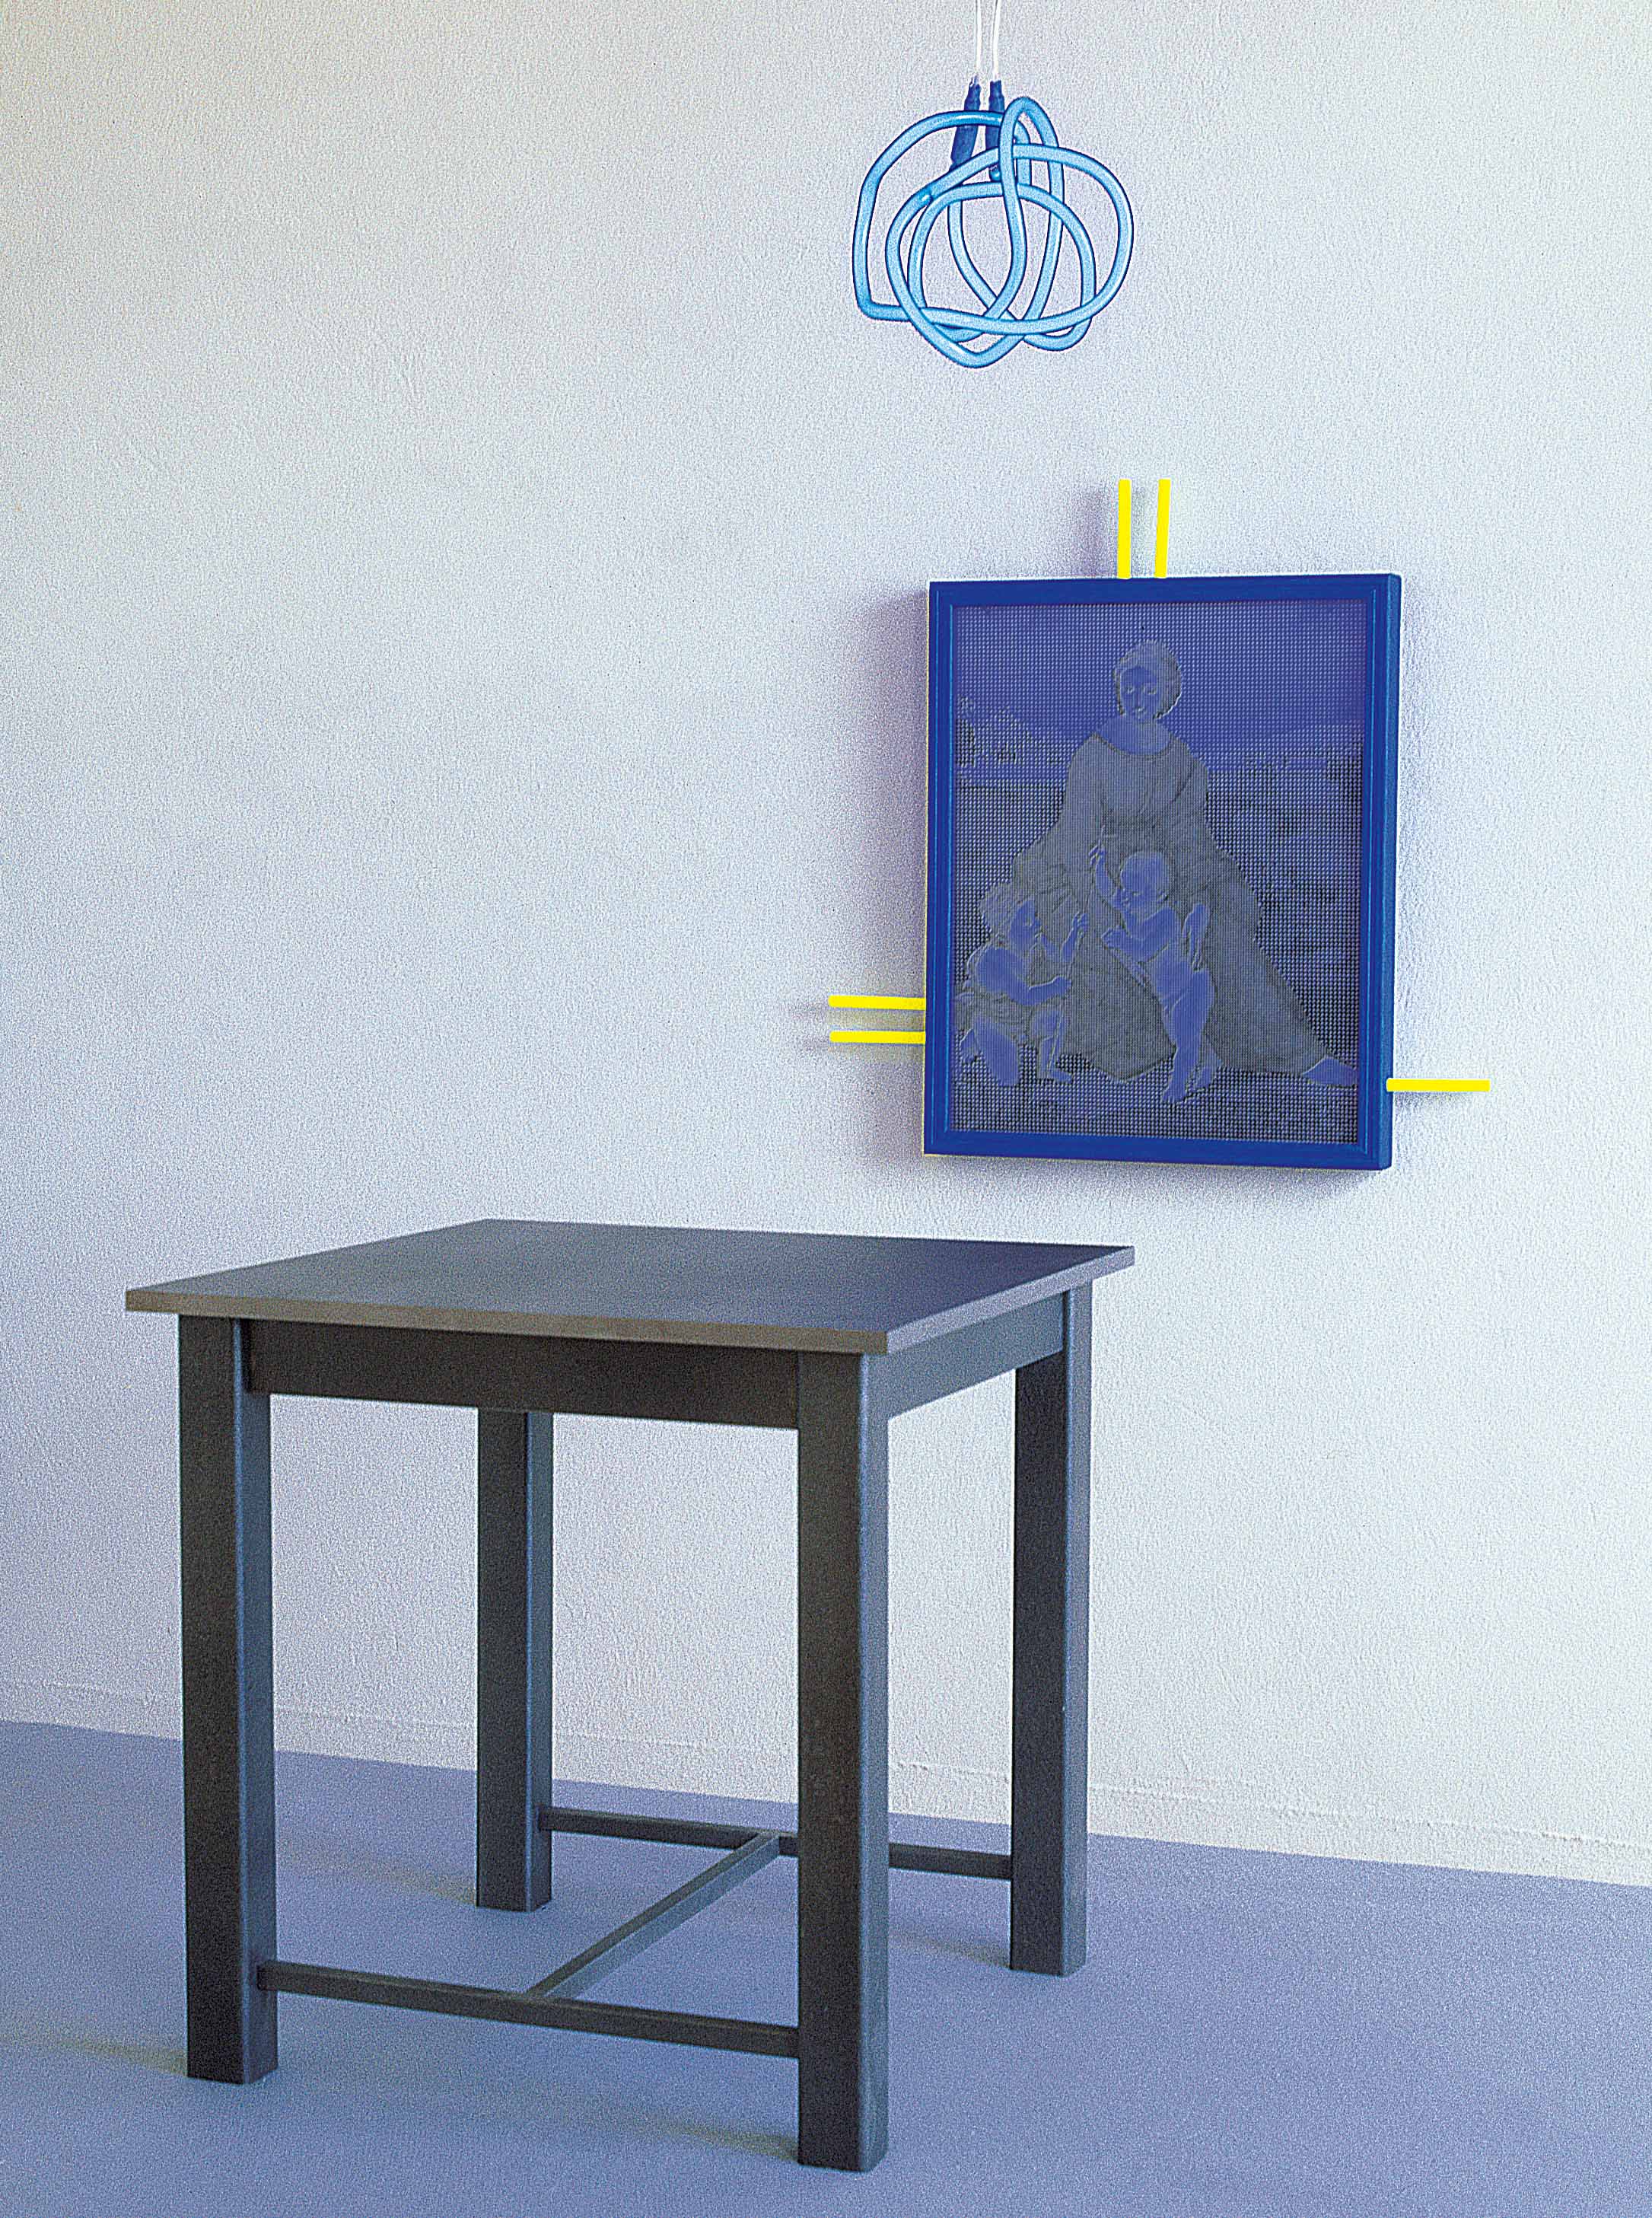 železen stol (45 x 45 x 45 cm), sitotisk na les, neonska cev, 1997